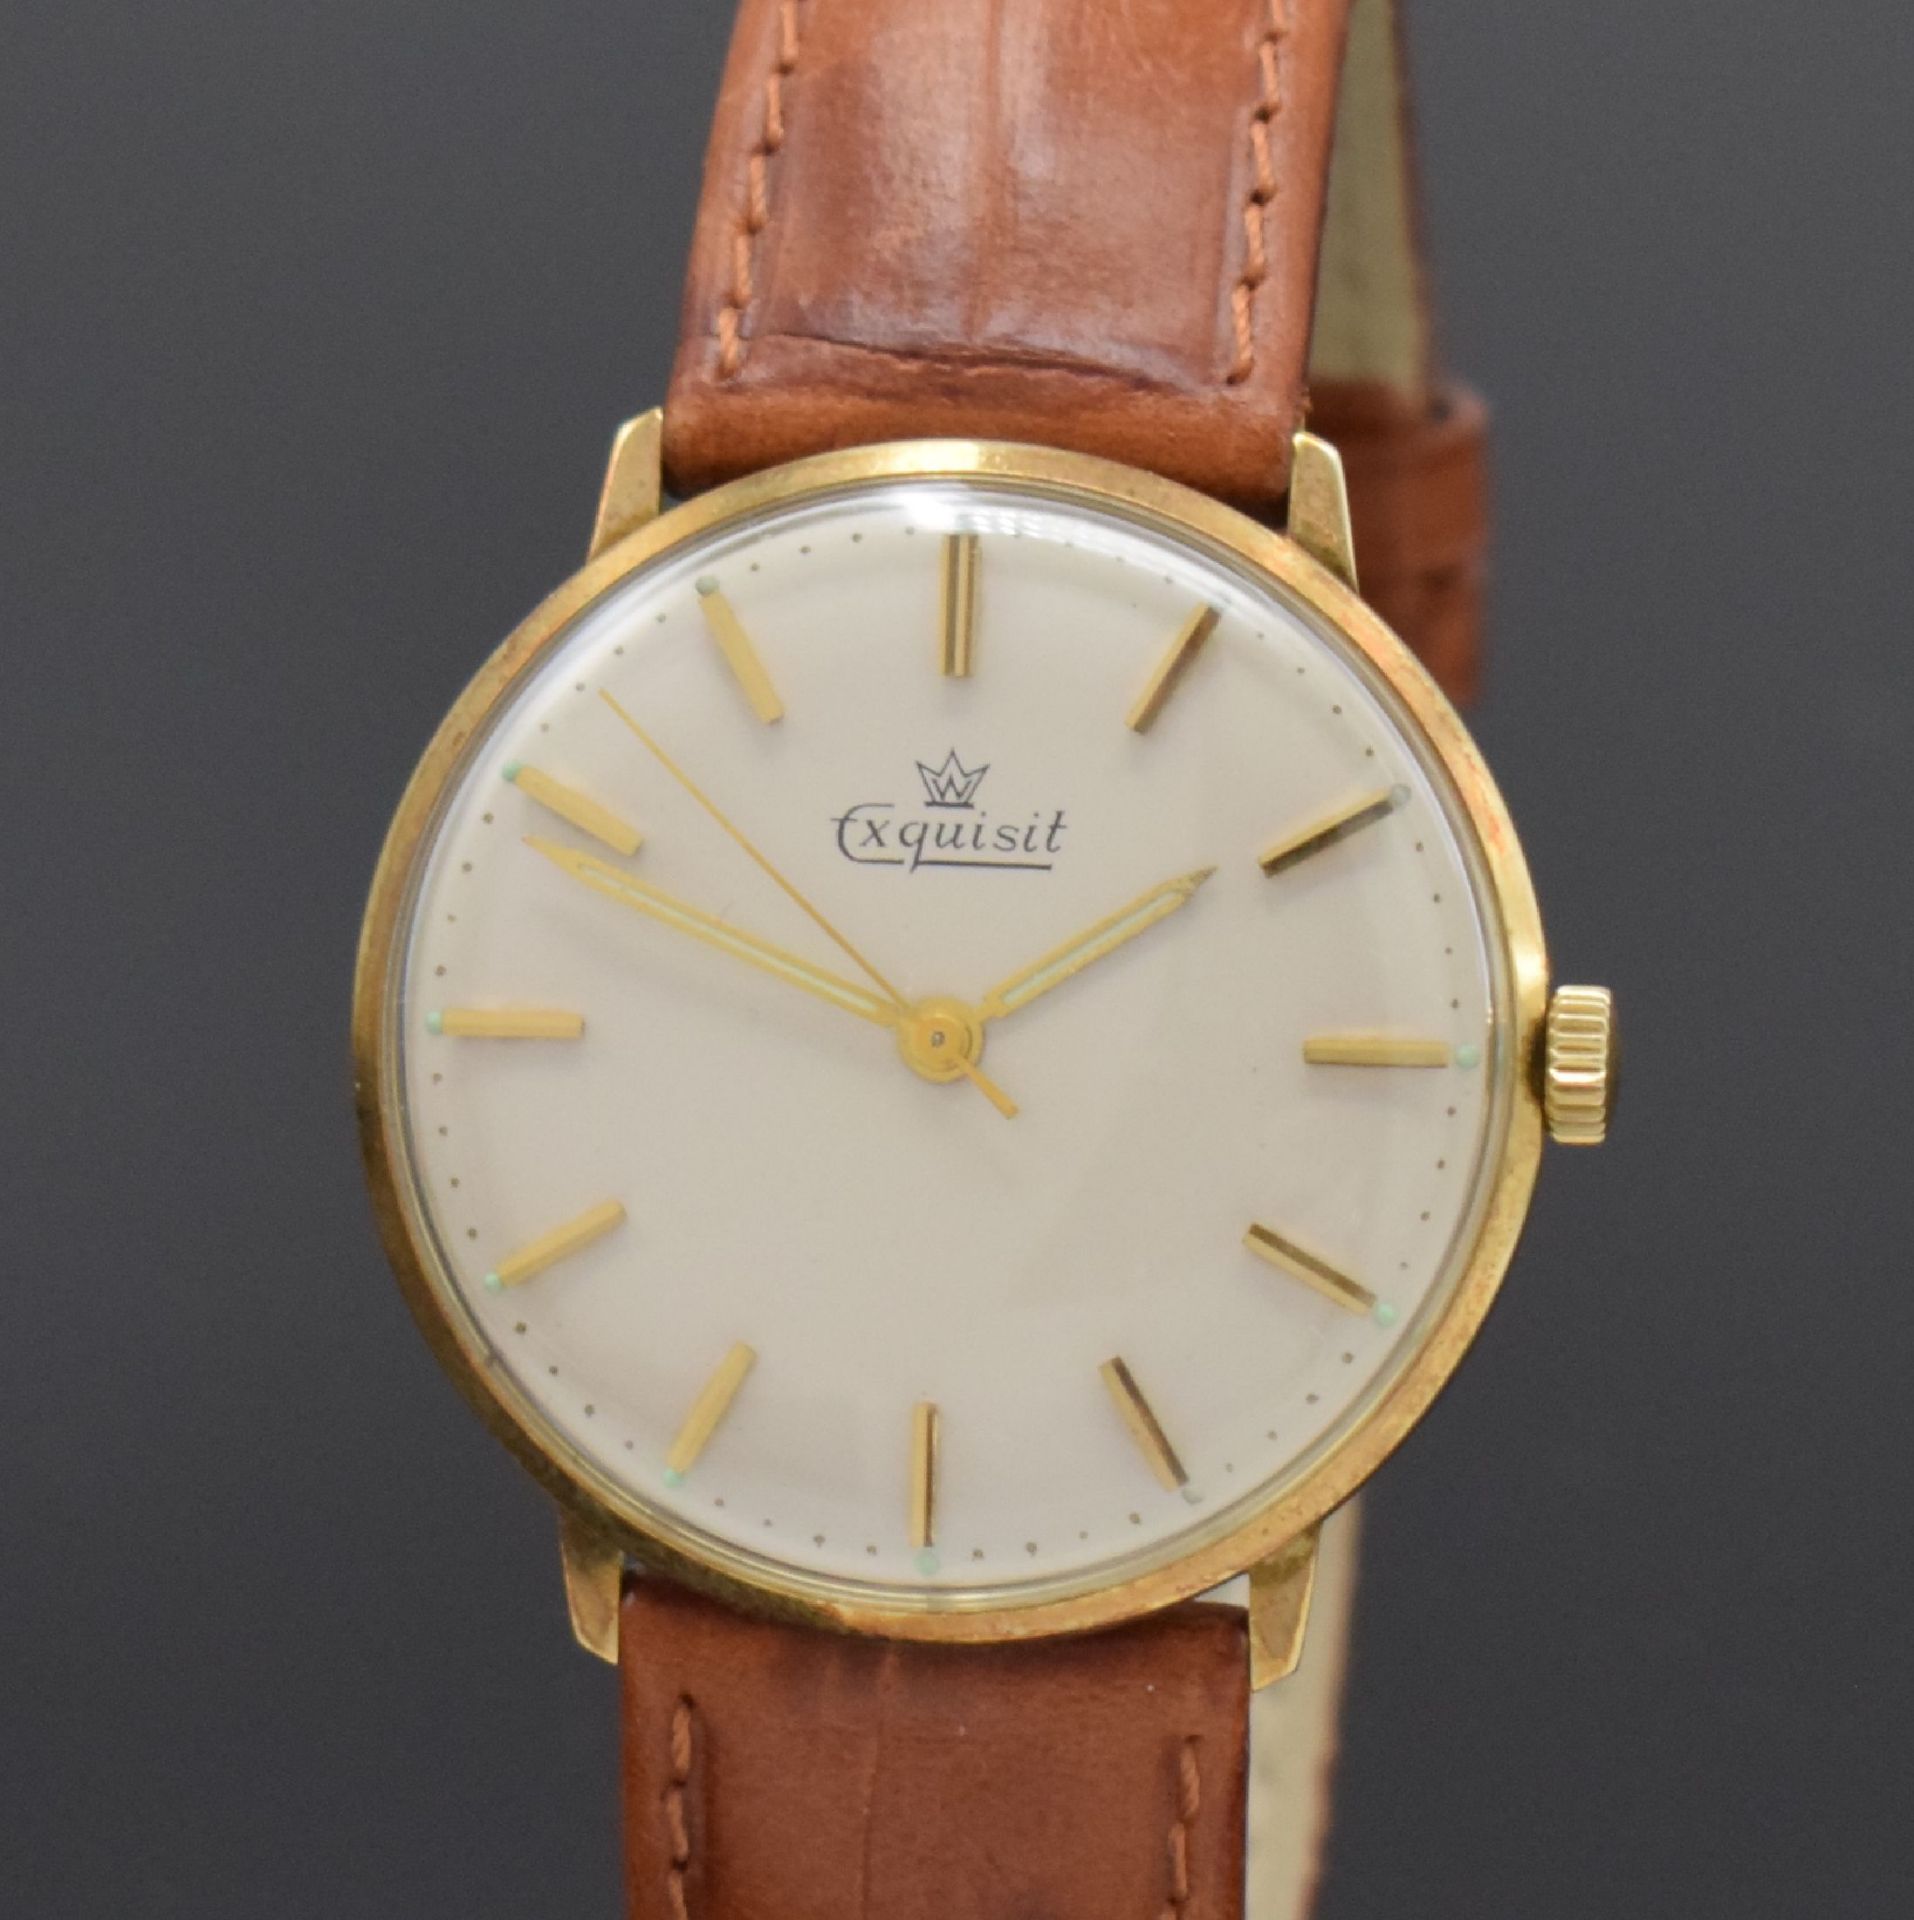 EXQUISIT Armbanduhr in GG 585/000, Schweiz um 1960, - Bild 2 aus 5